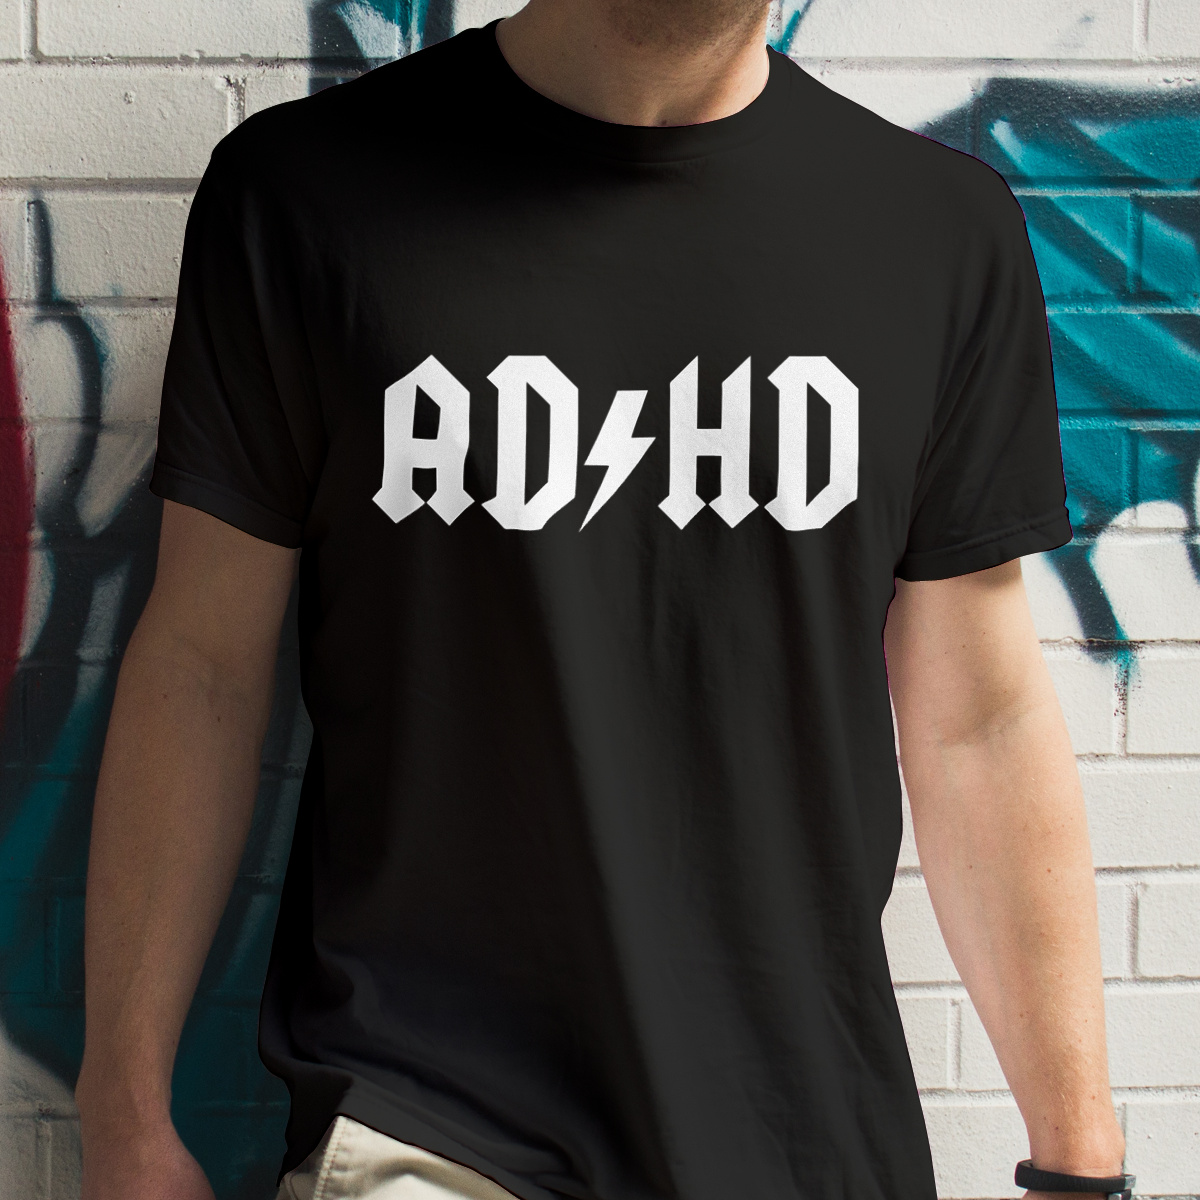 ADHD - Męska Koszulka Czarna